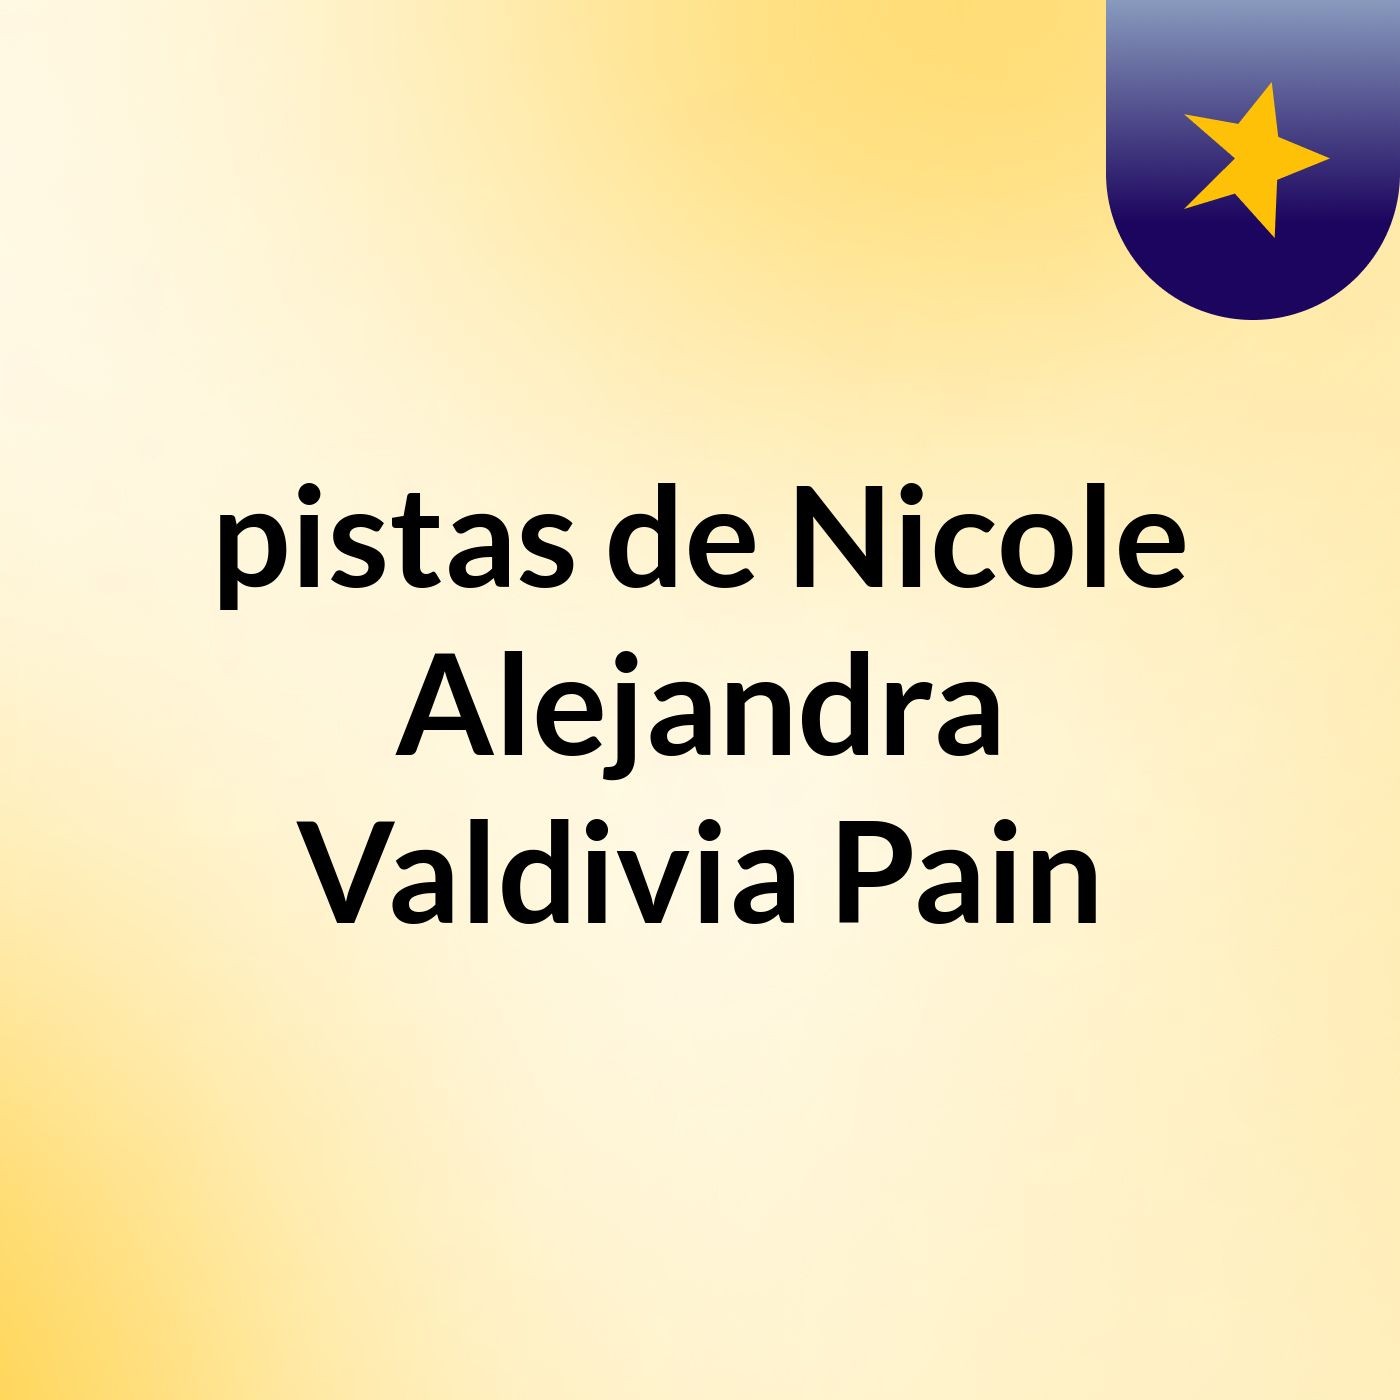 pistas de Nicole Alejandra Valdivia Pain